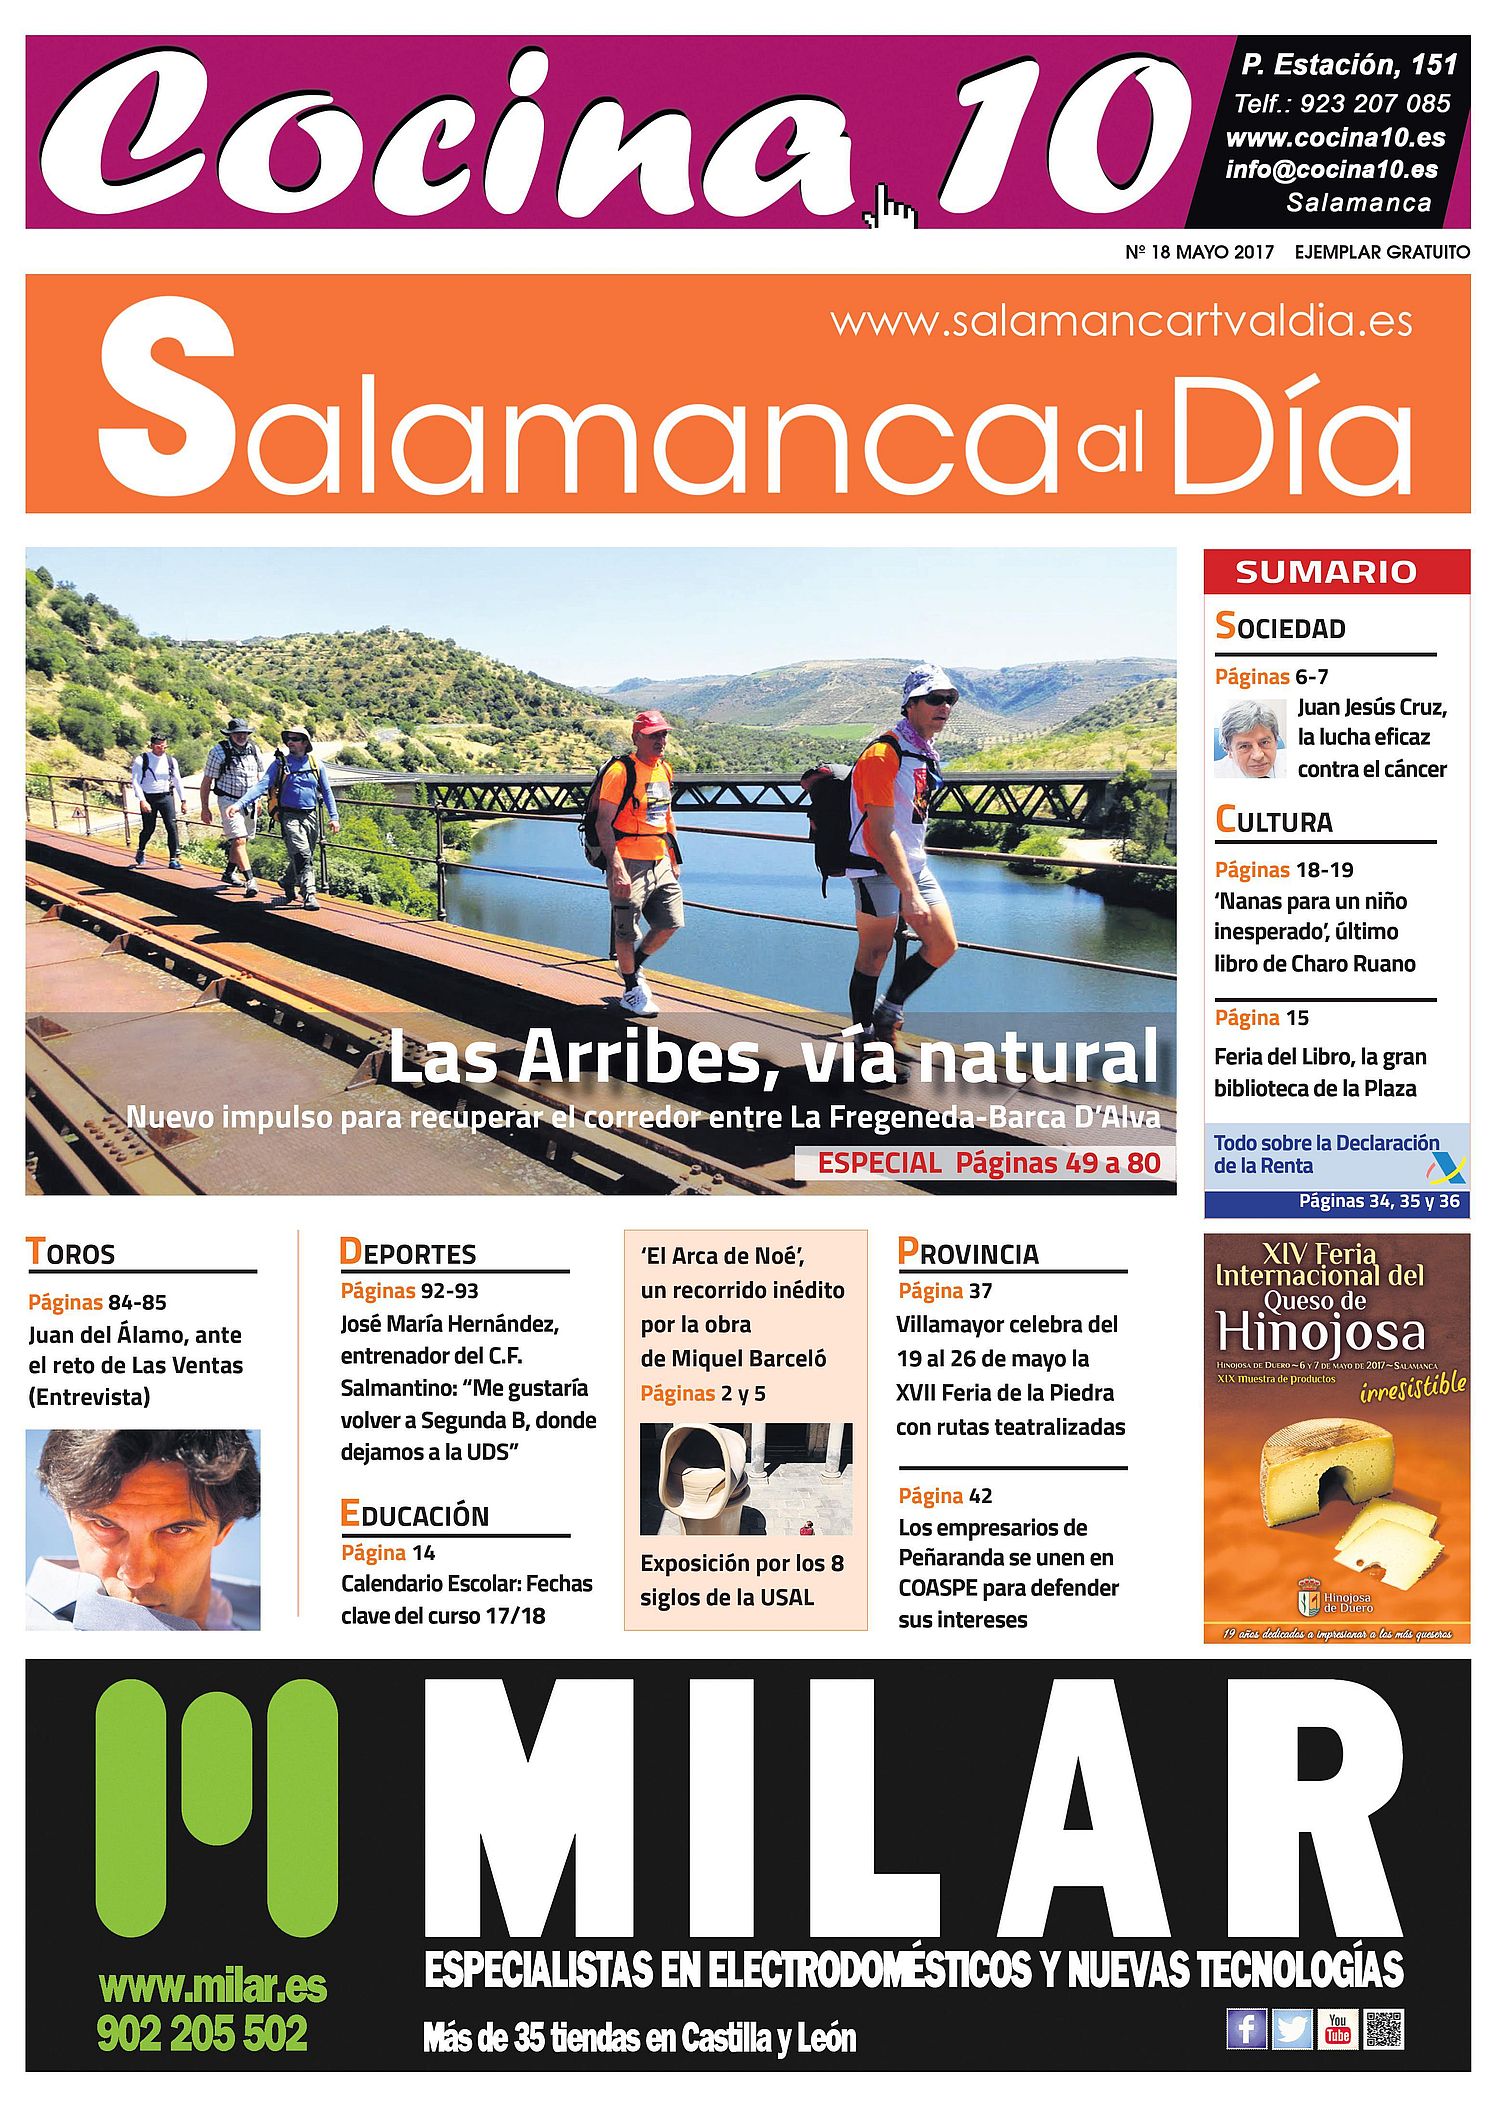 Foto 1 - Sale a la calle el número de mayo del periódico gratuito SALAMANCA AL DÍA